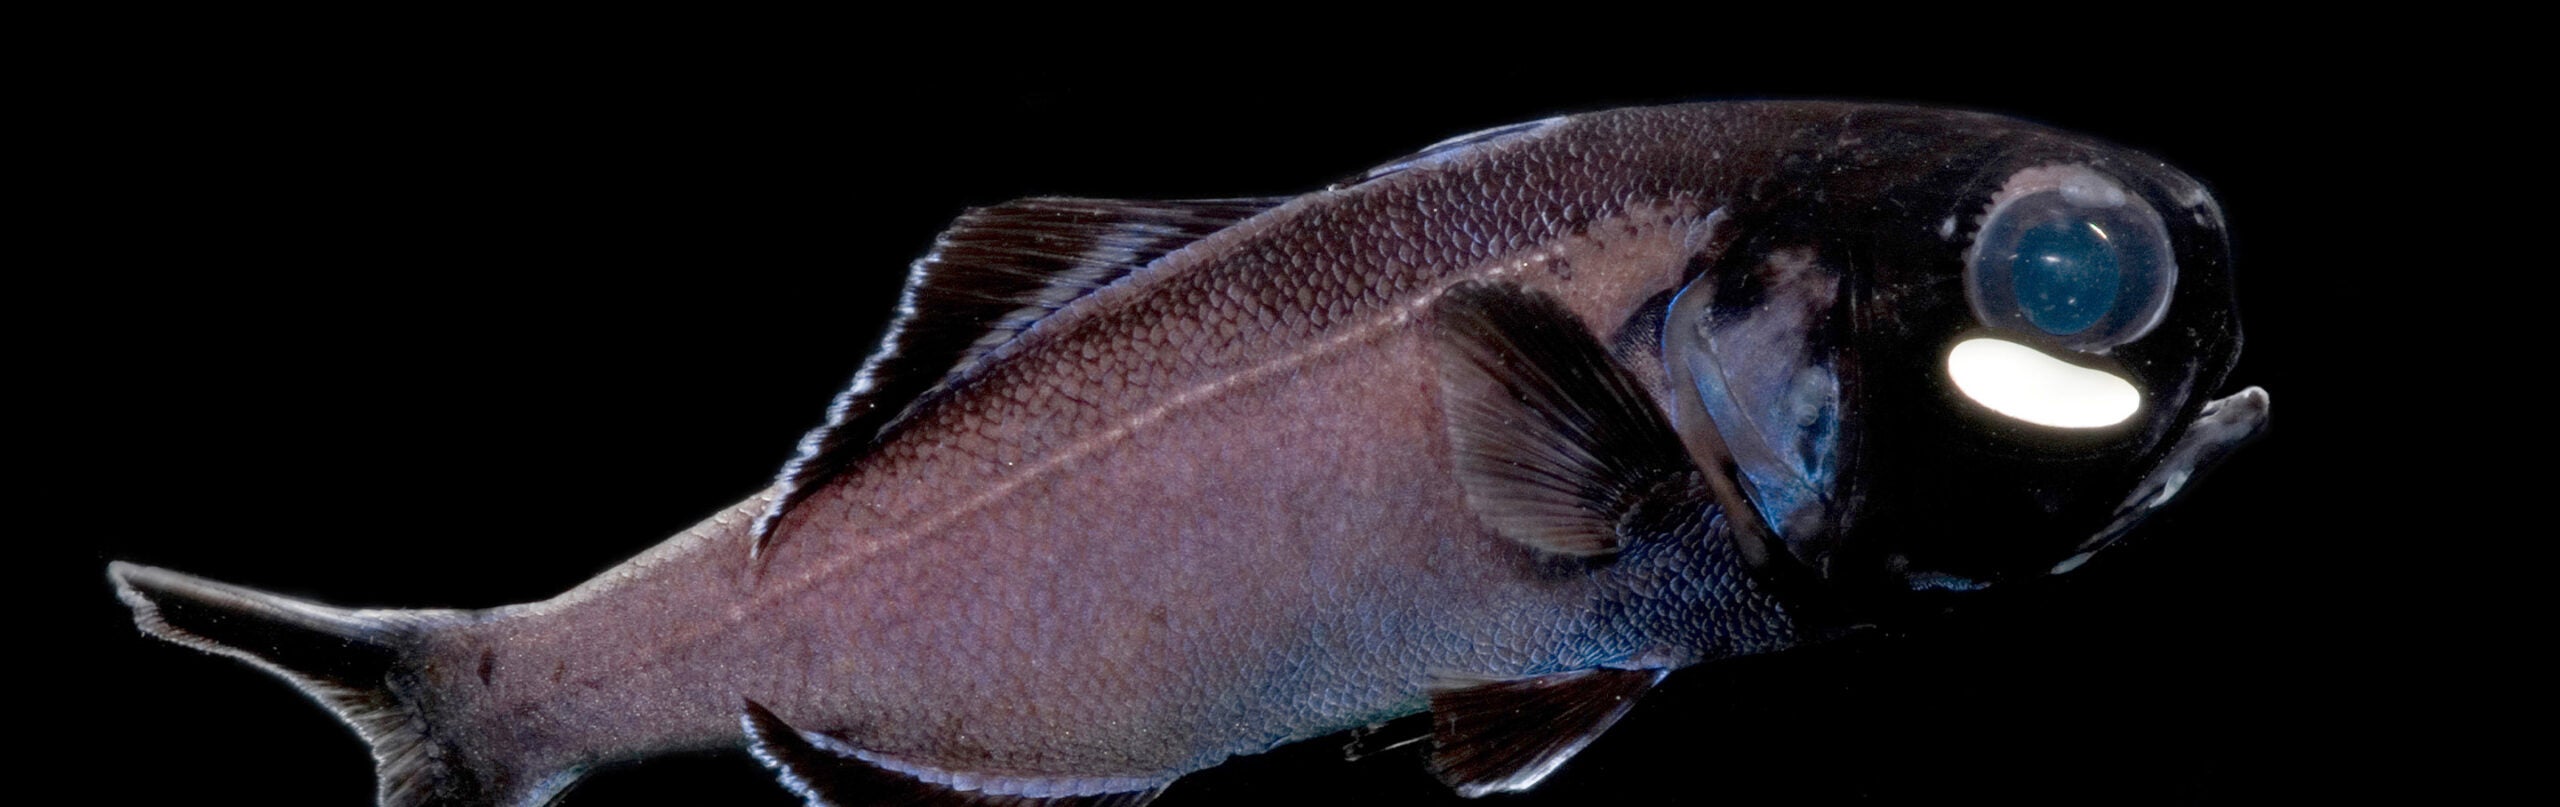 Flashlight Fish - Georgia Aquarium